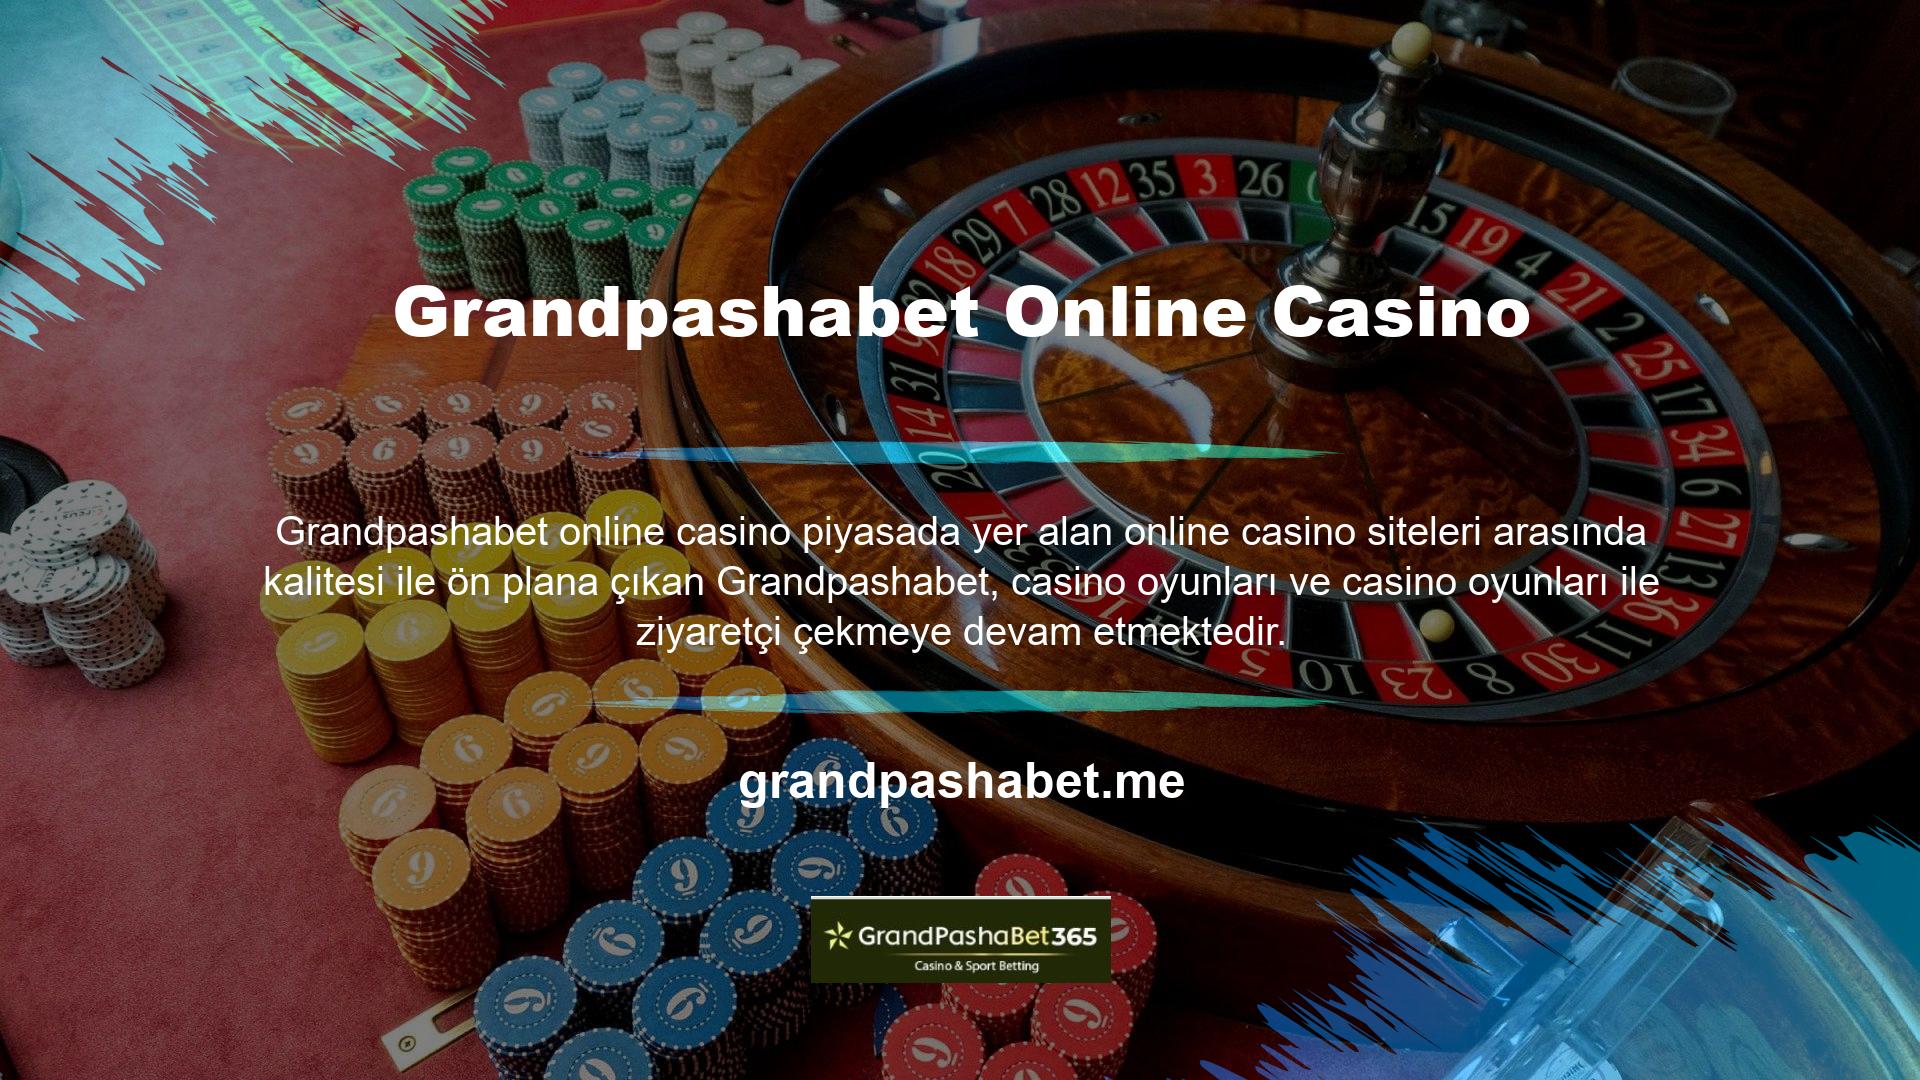 Üye sayısı giderek artan çevrimiçi casino siteleri, kullanımı kolay ve casino tutkunları arasında popülerdir